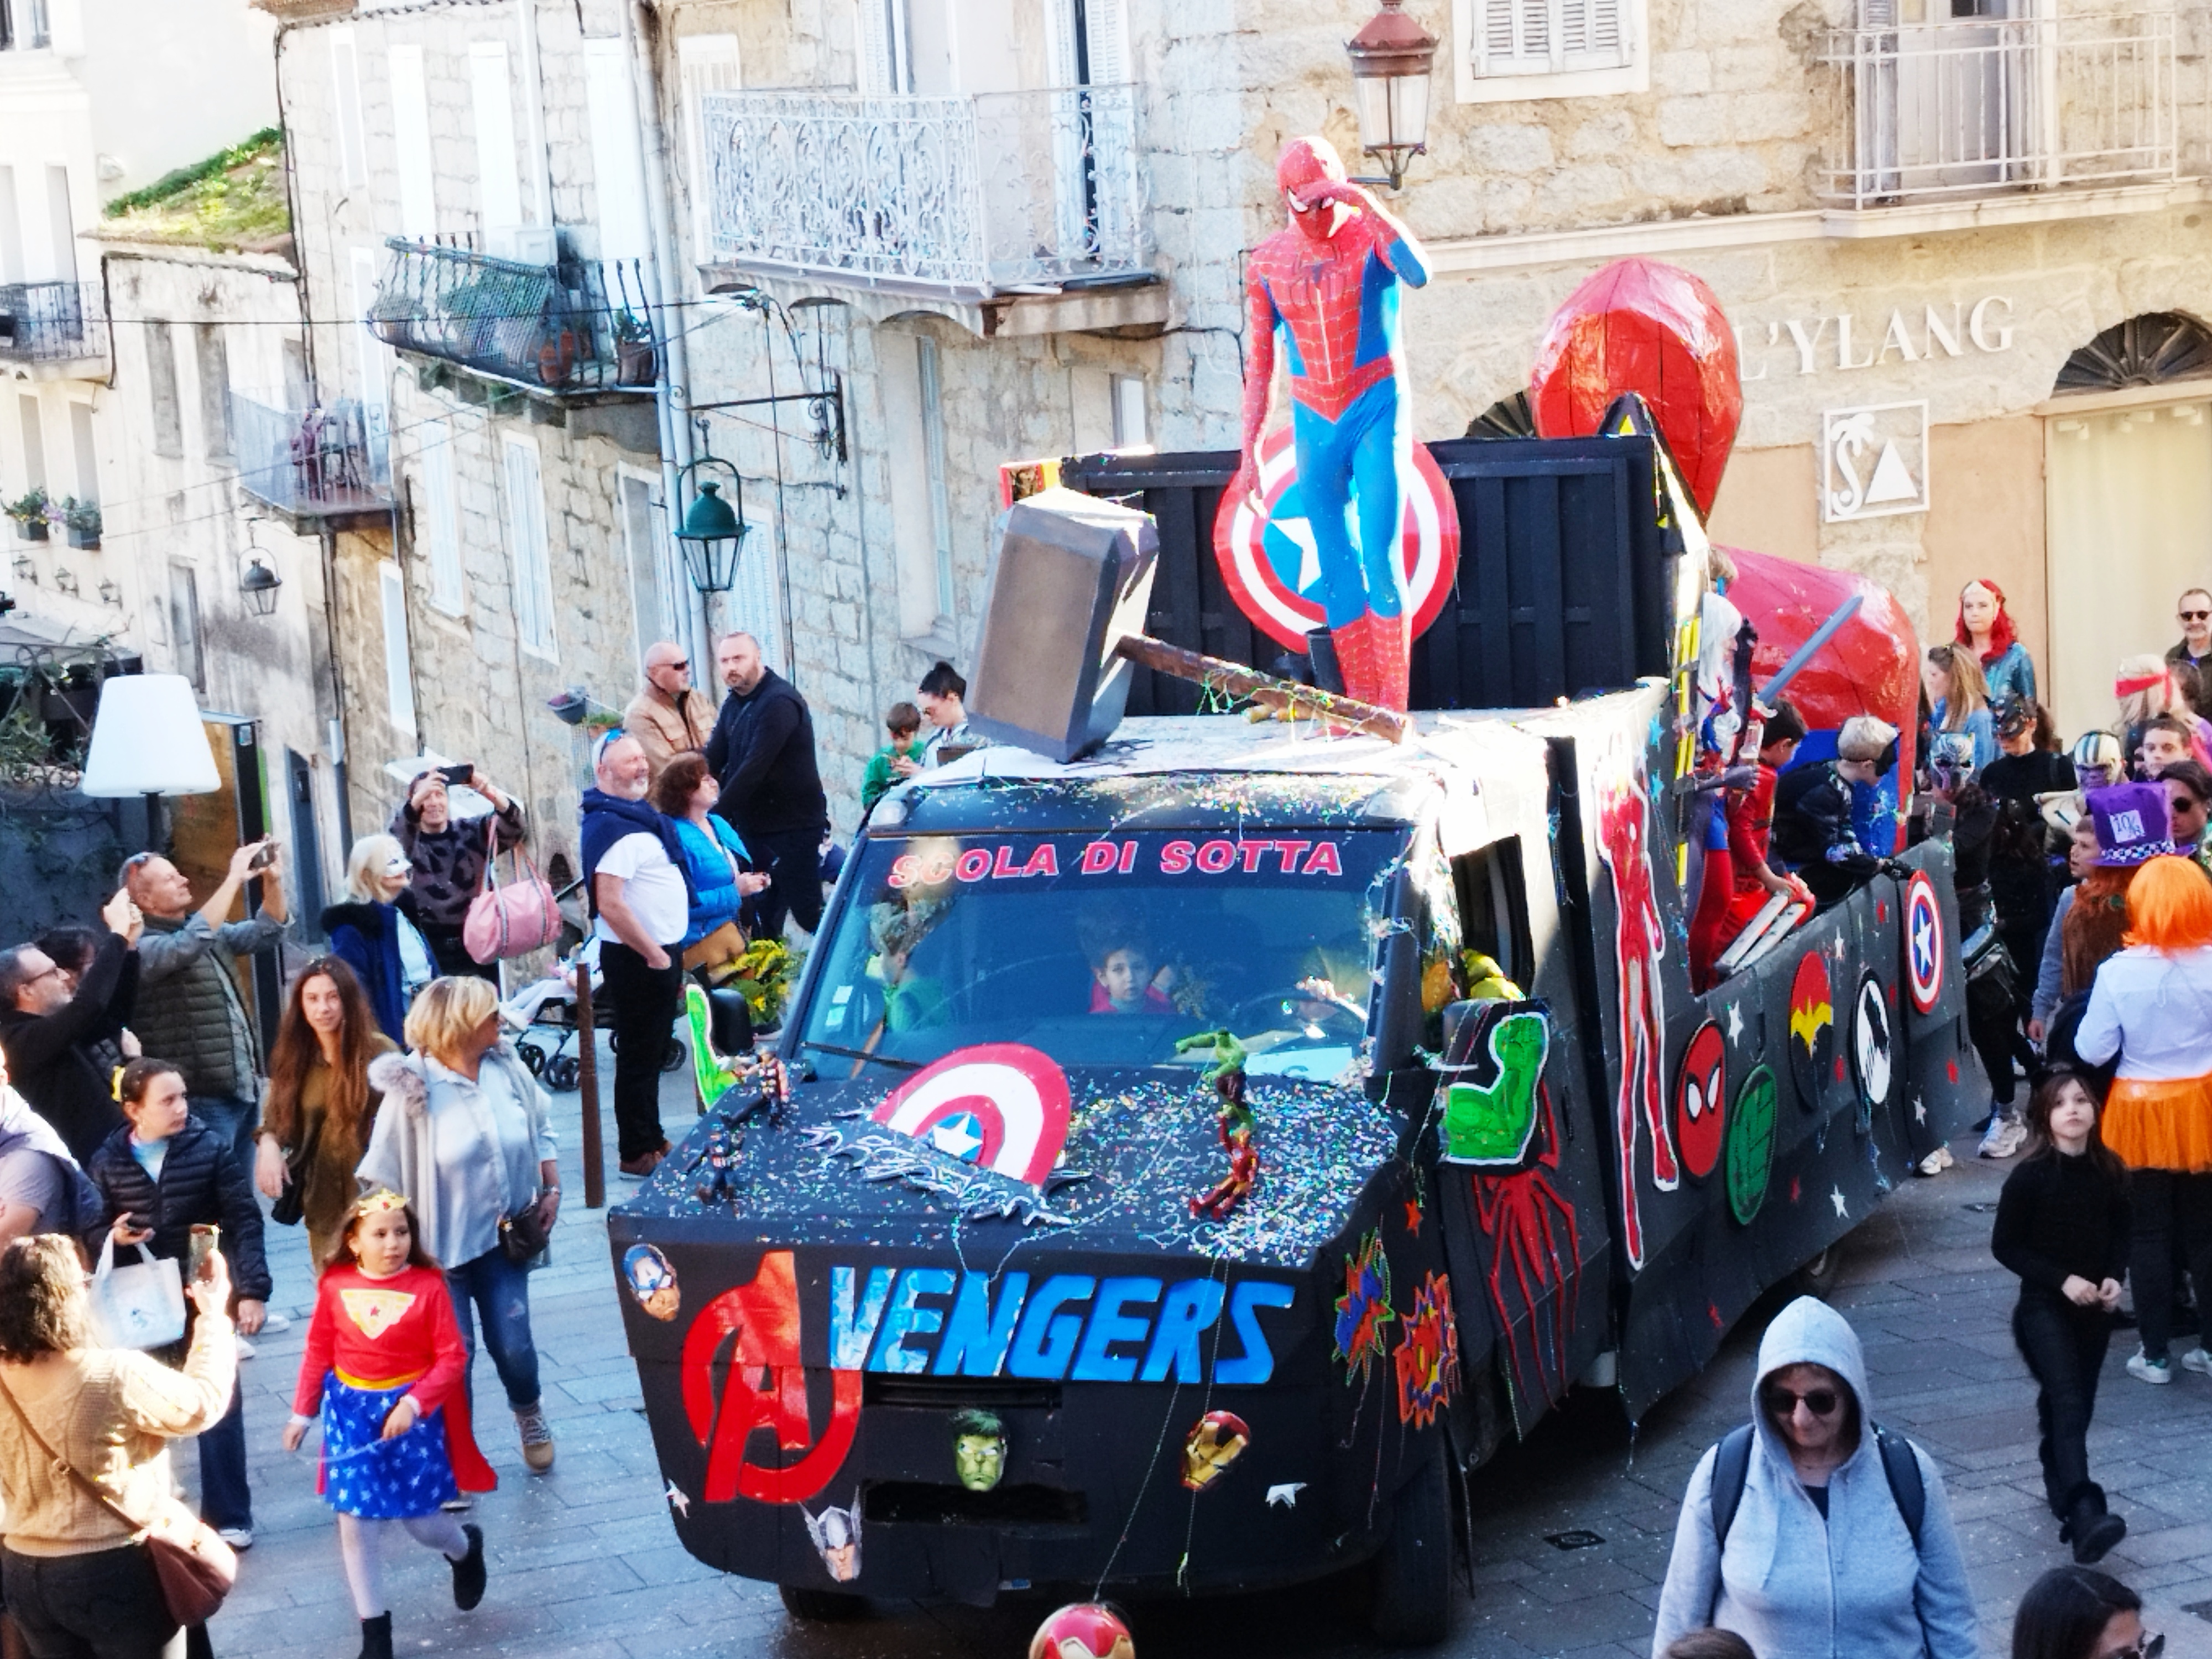 Spiderman a eu de la concurrence cette année, mais il reste la superstar du carnaval aux yeux des enfants.